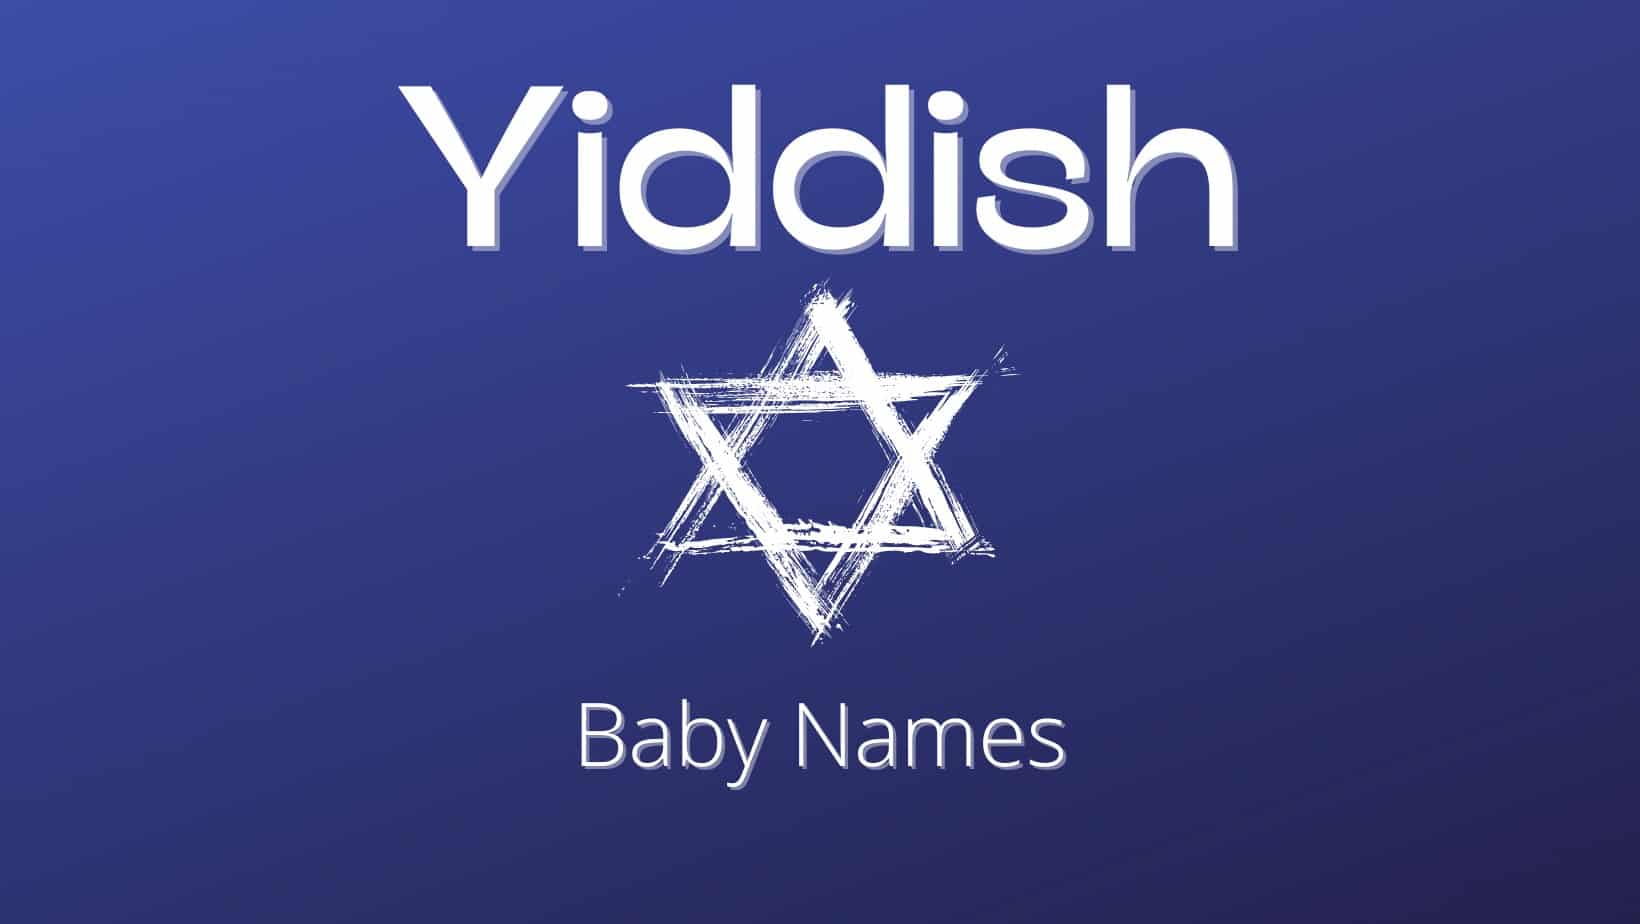 Yiddish baby names